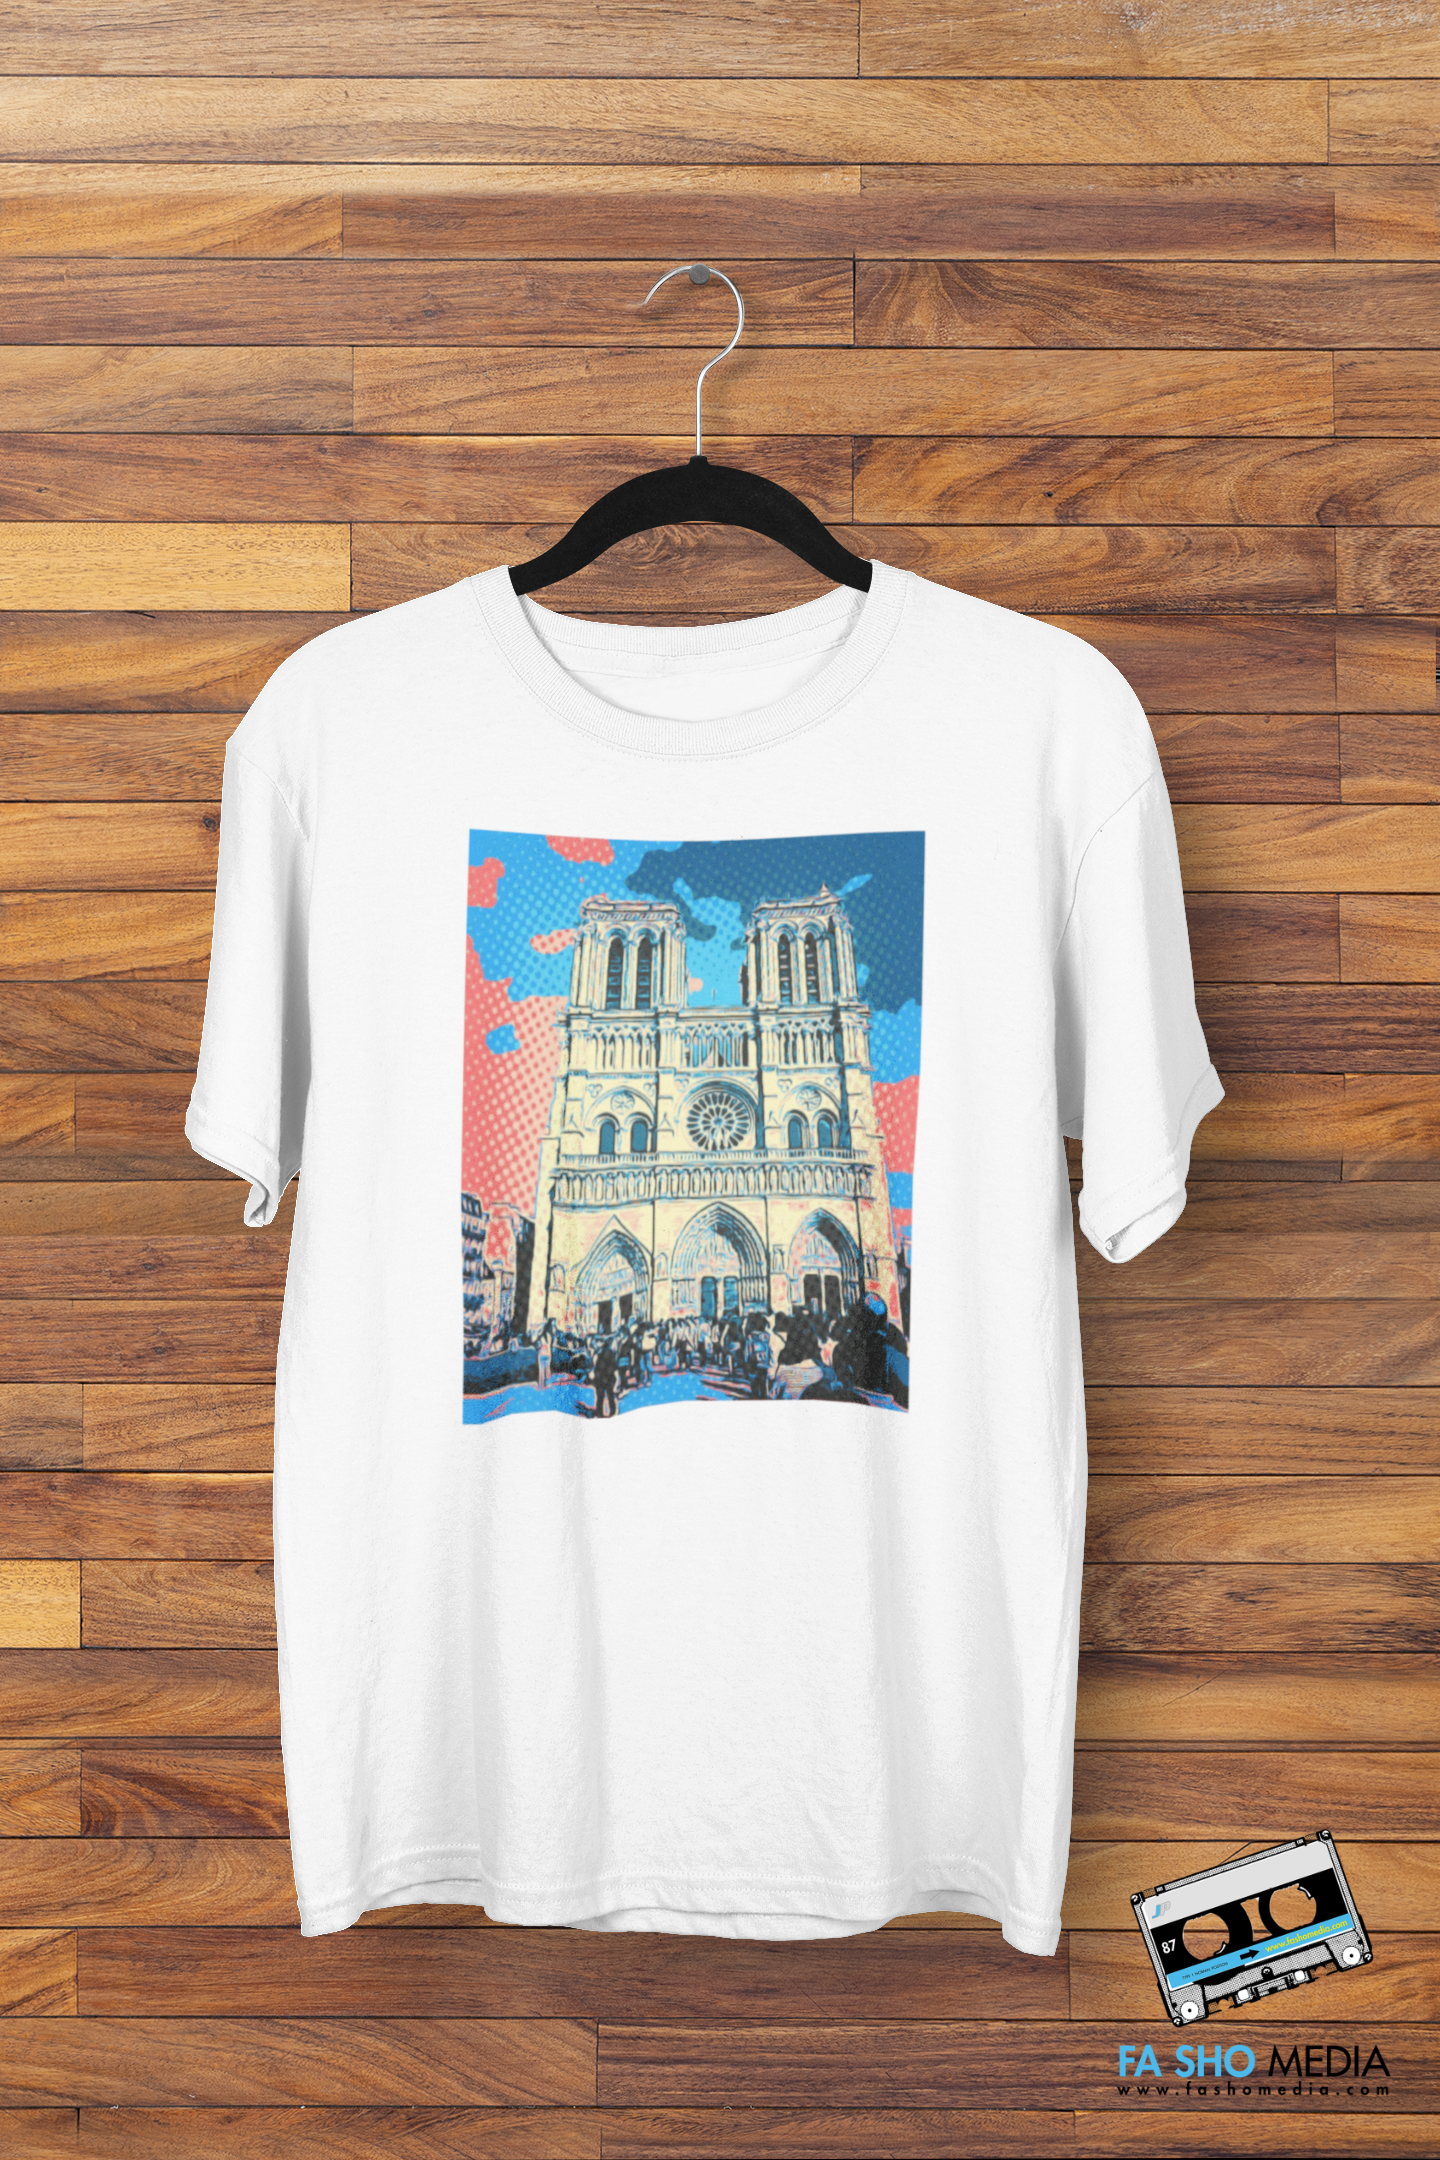 Cathedrale Notre-Dame de Paris Shirt (Men's)